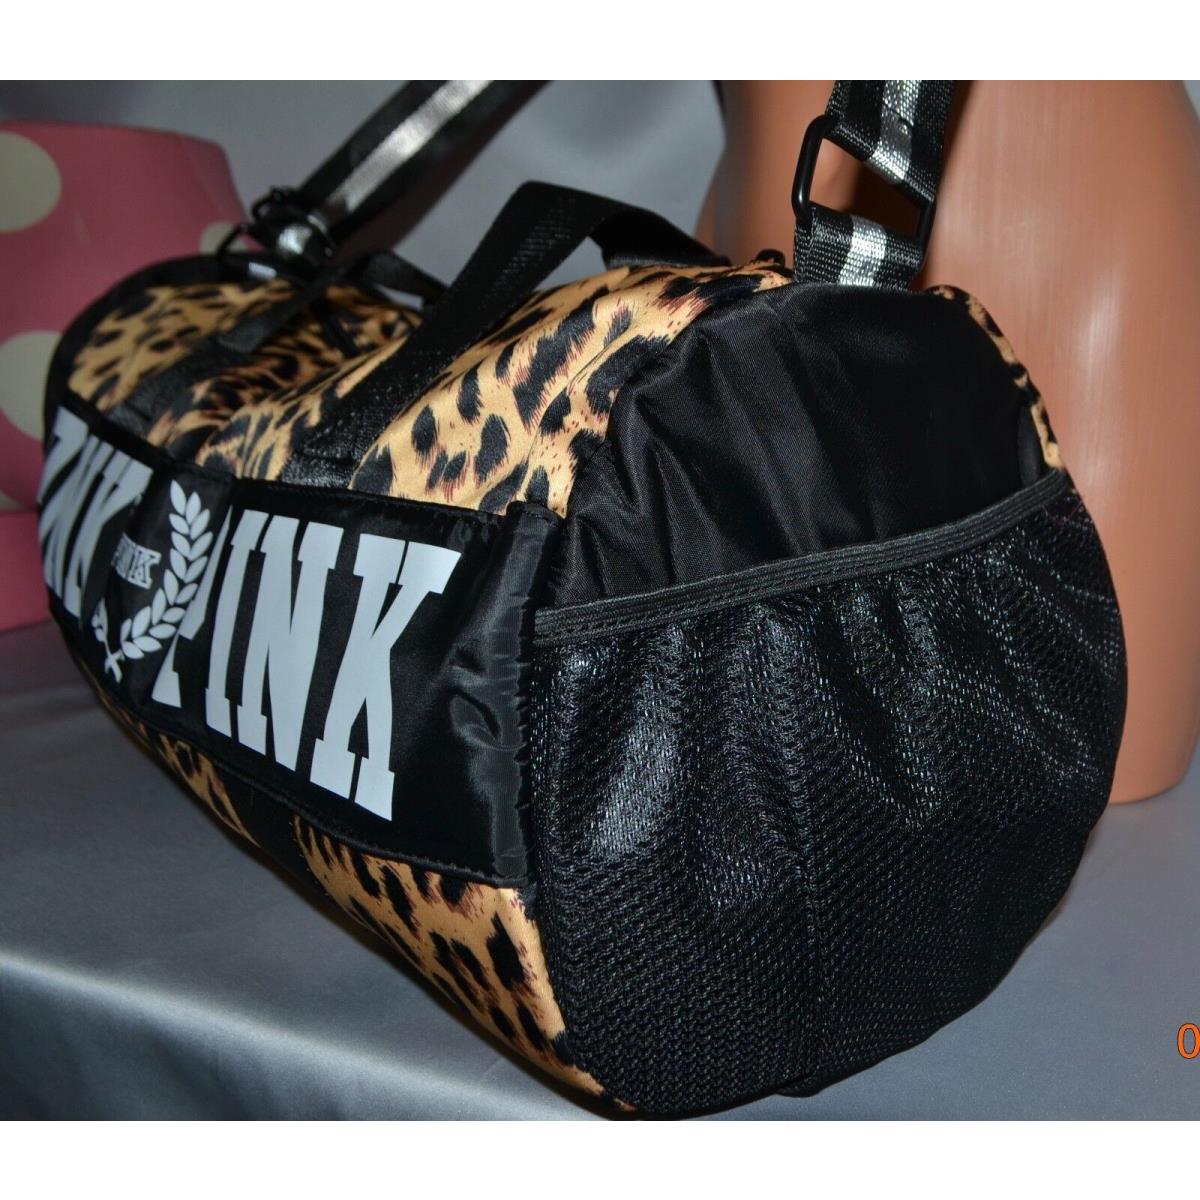 Victorias Secret Pink Graphic Leopard Tote Bag Duffle Gym School